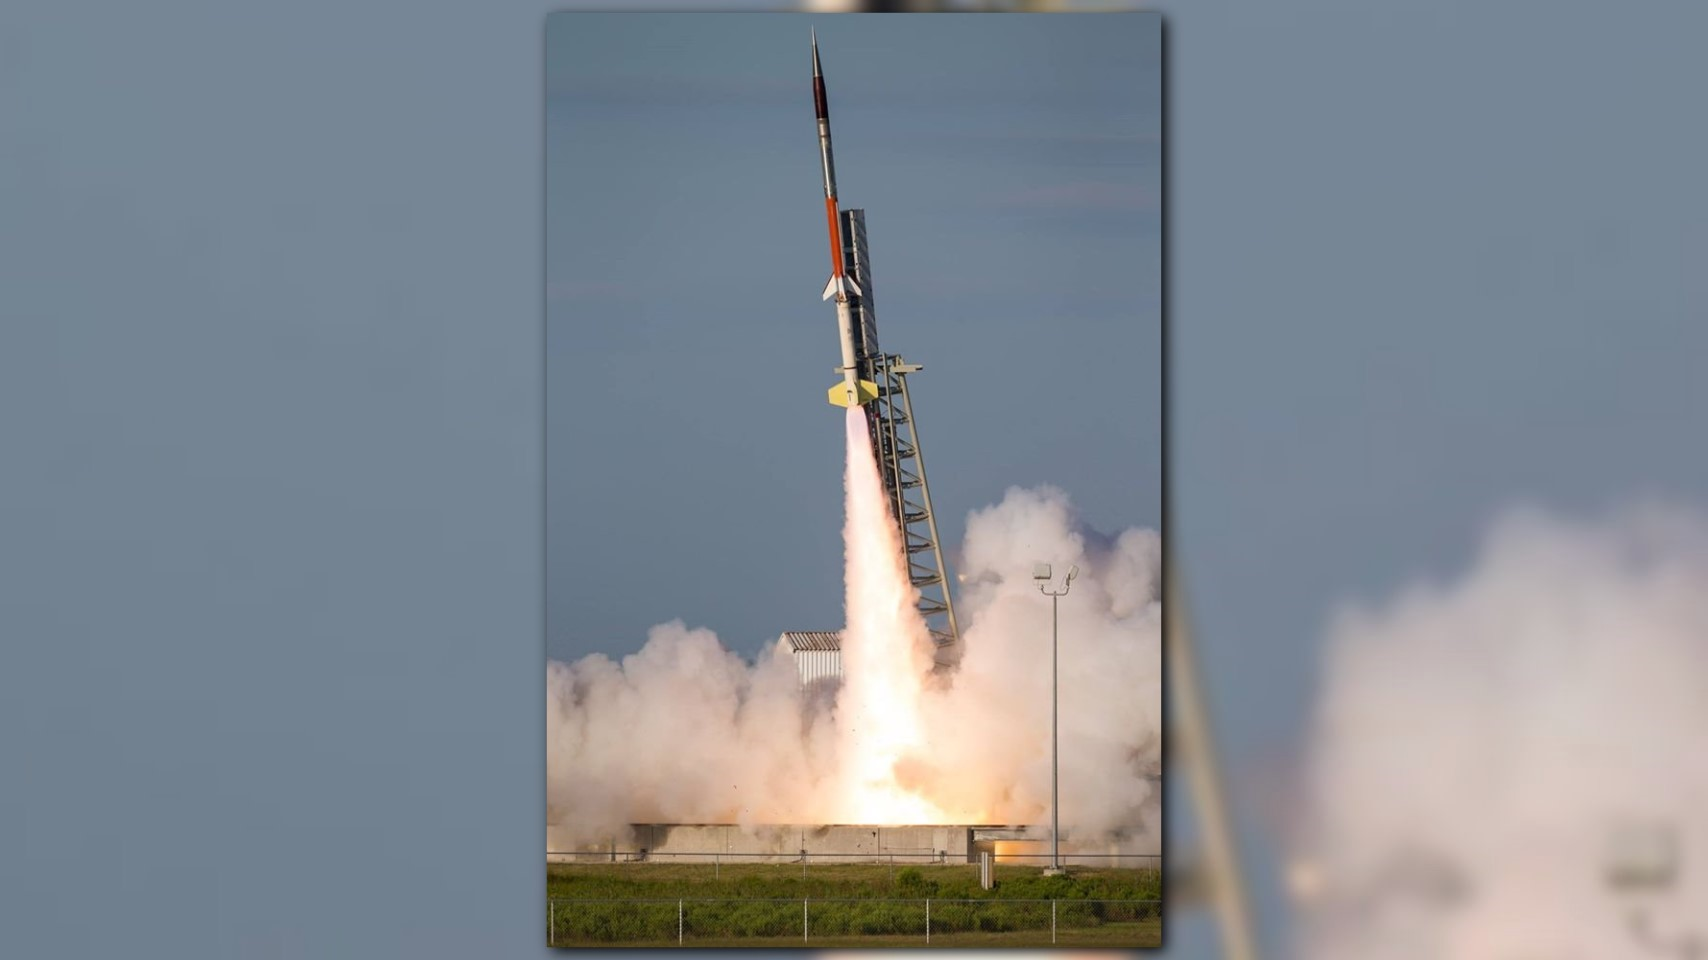 wallops rocket launch